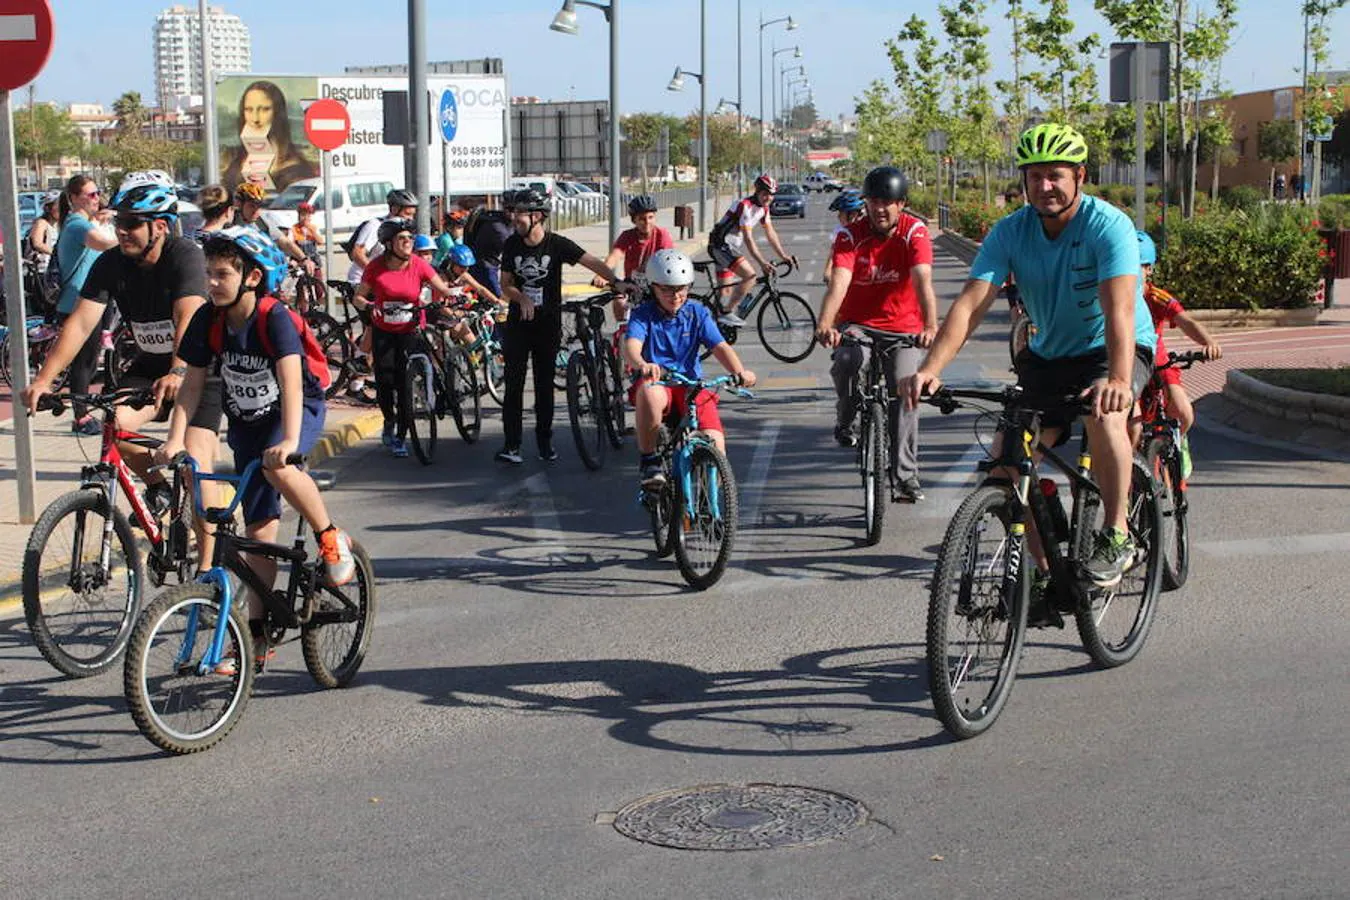 Cerca de un millar de personas participaron en la tarde de ayer en el Día de la Bicicleta del núcleo de El Ejido. Un evento que volvió a subir sobre las dos ruedas a abuelos, padres y nietos para disfrutar de una jornada de ocio y deporte en familia.